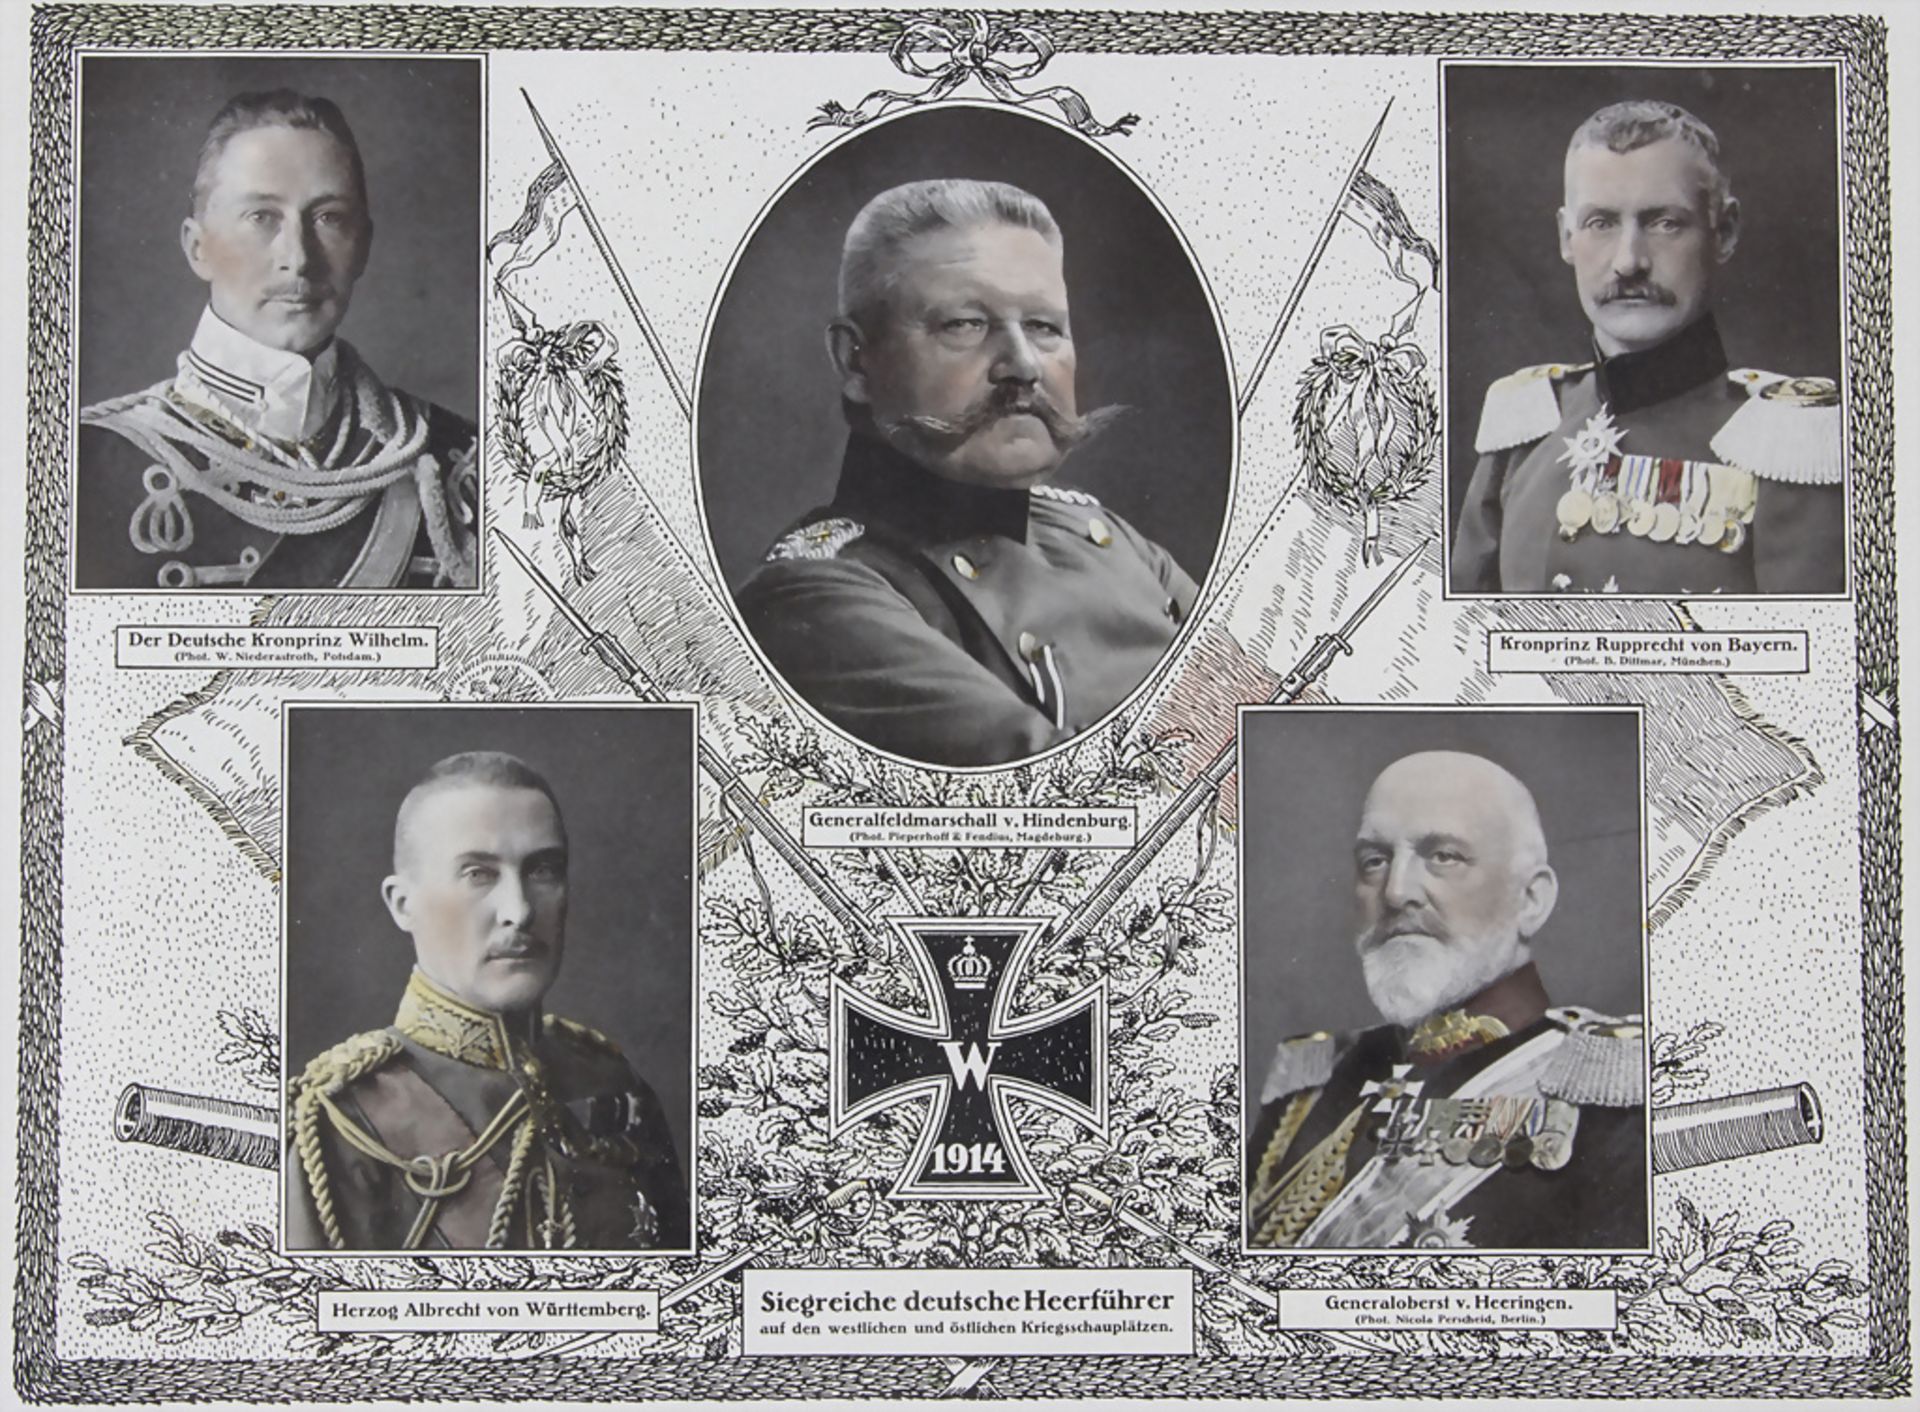 Siegreiche Deutsche Heerführer 1914 / Victorious German army leaders 1914